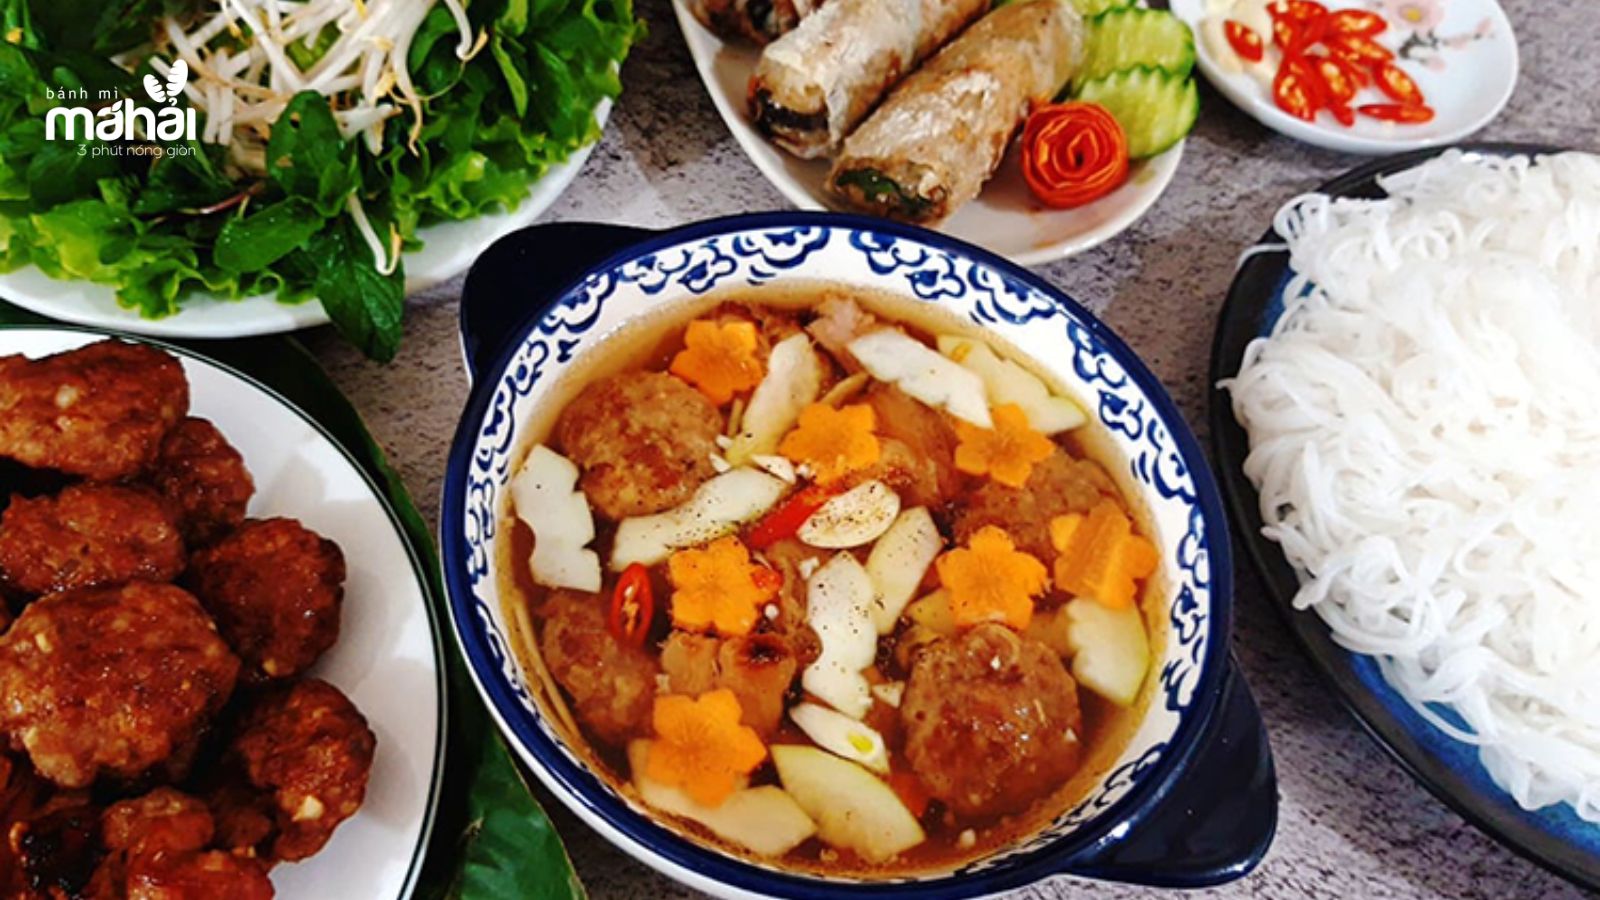 Món ngon luôn luôn được nhiều người Hà Nội lựa chọn cho các bữa ăn đó là bún chả. (Nguồn ảnh: VnExpress).